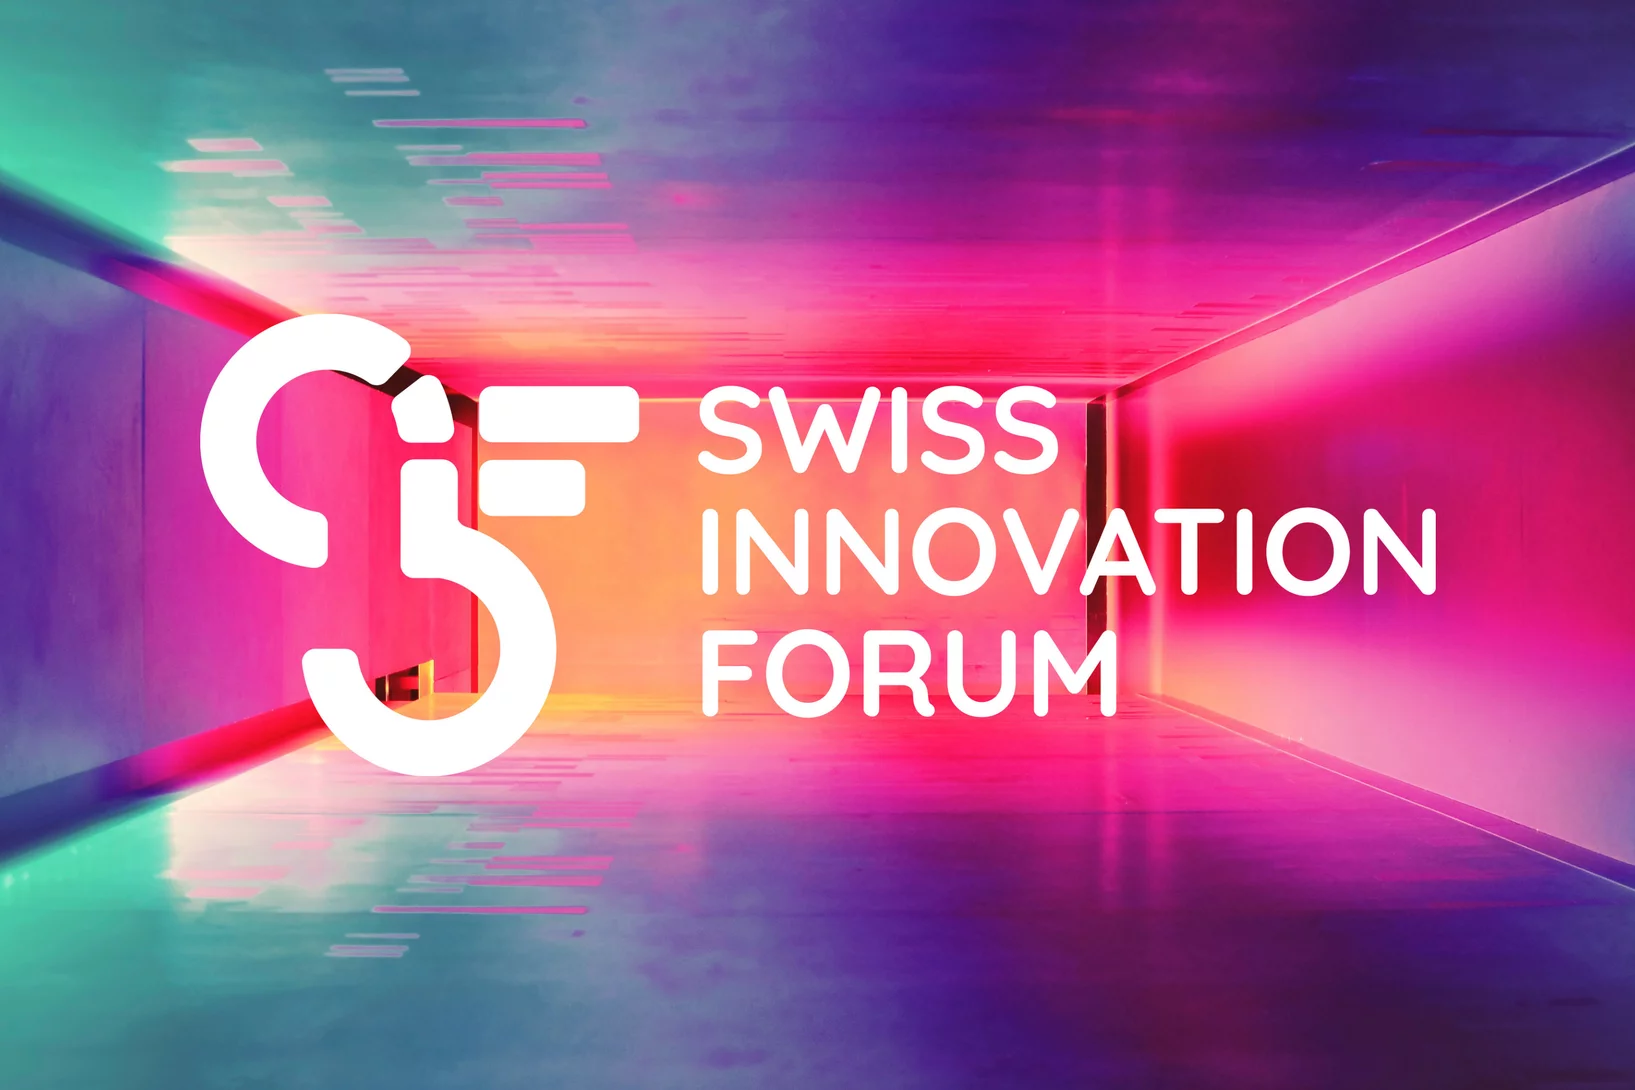 Le SIF 2021 aura lieu le 18 novembre 2021 au Centre des congrès de Bâle (source d'image : Swiss Innovation Forum).